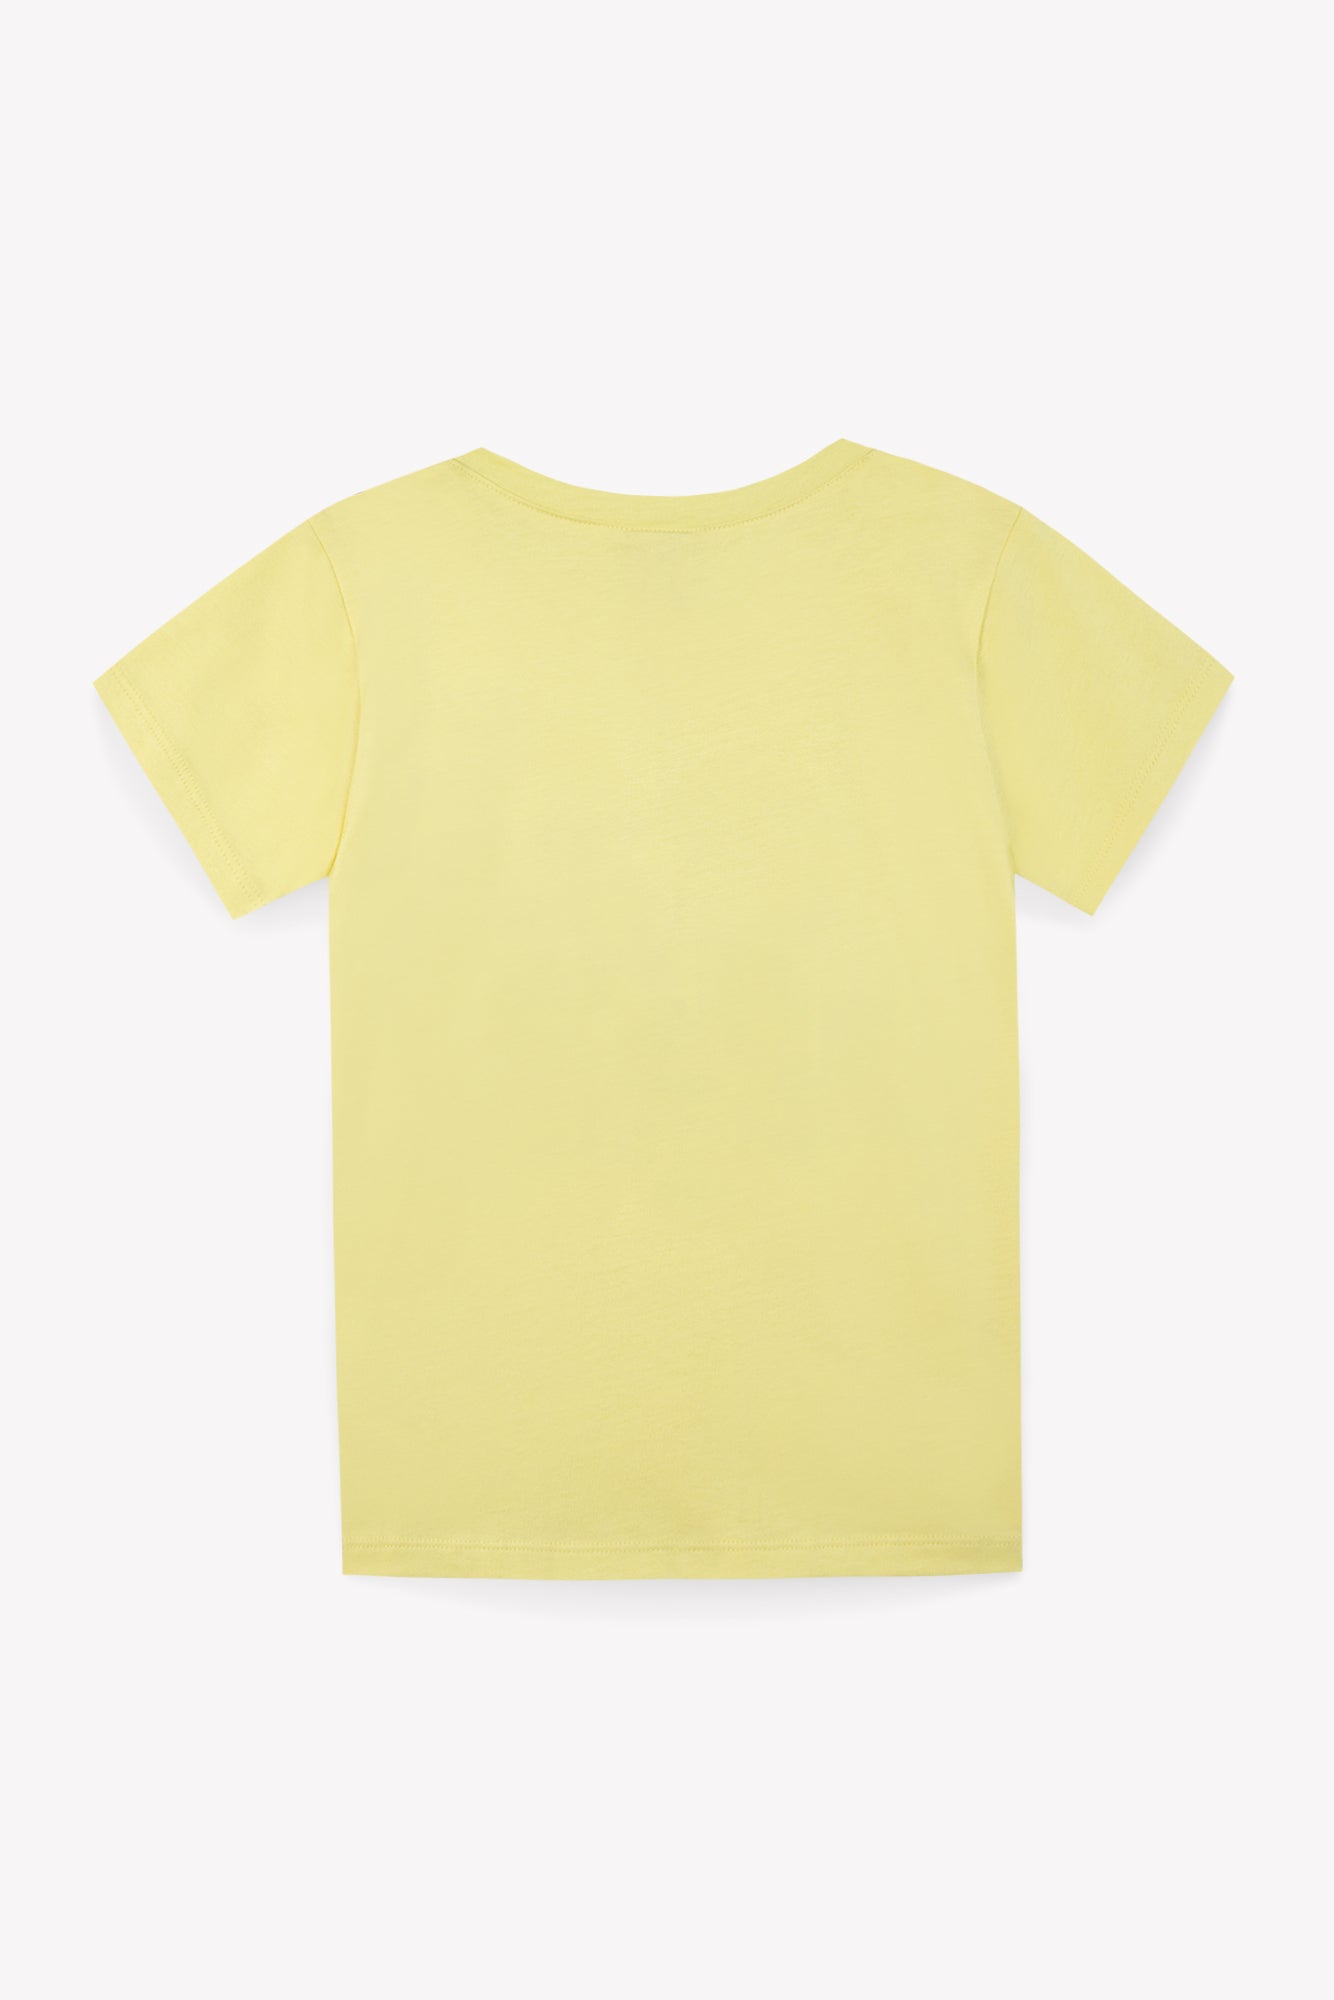 Tee-shirt - Tubog jaune coton GOTS imprimé forest KR